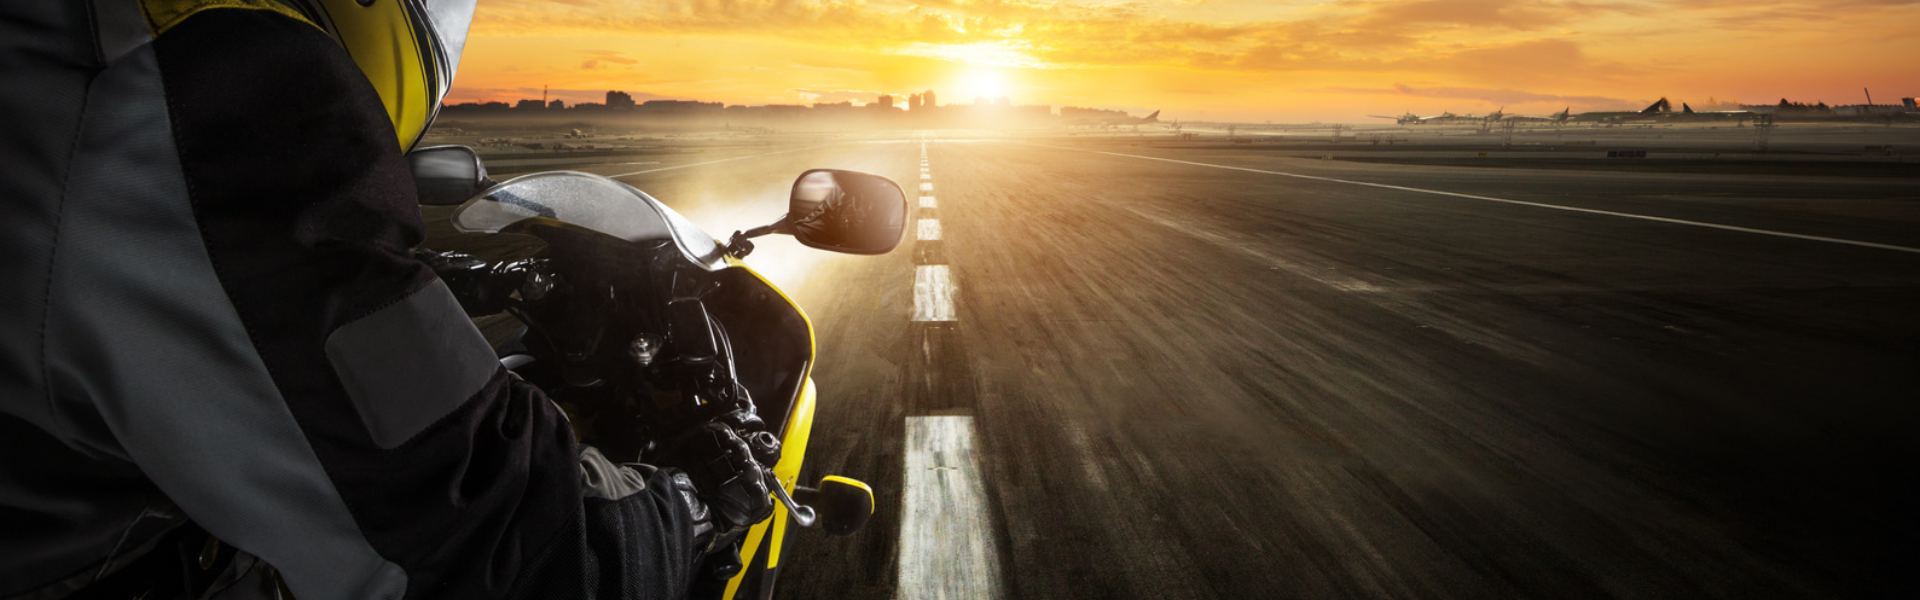 Accessori da moto per una guida più sicura e confortevole Faieta Moto: I  Nostri Articoli. Scopri le ultime guide per gli amanti delle due ruote